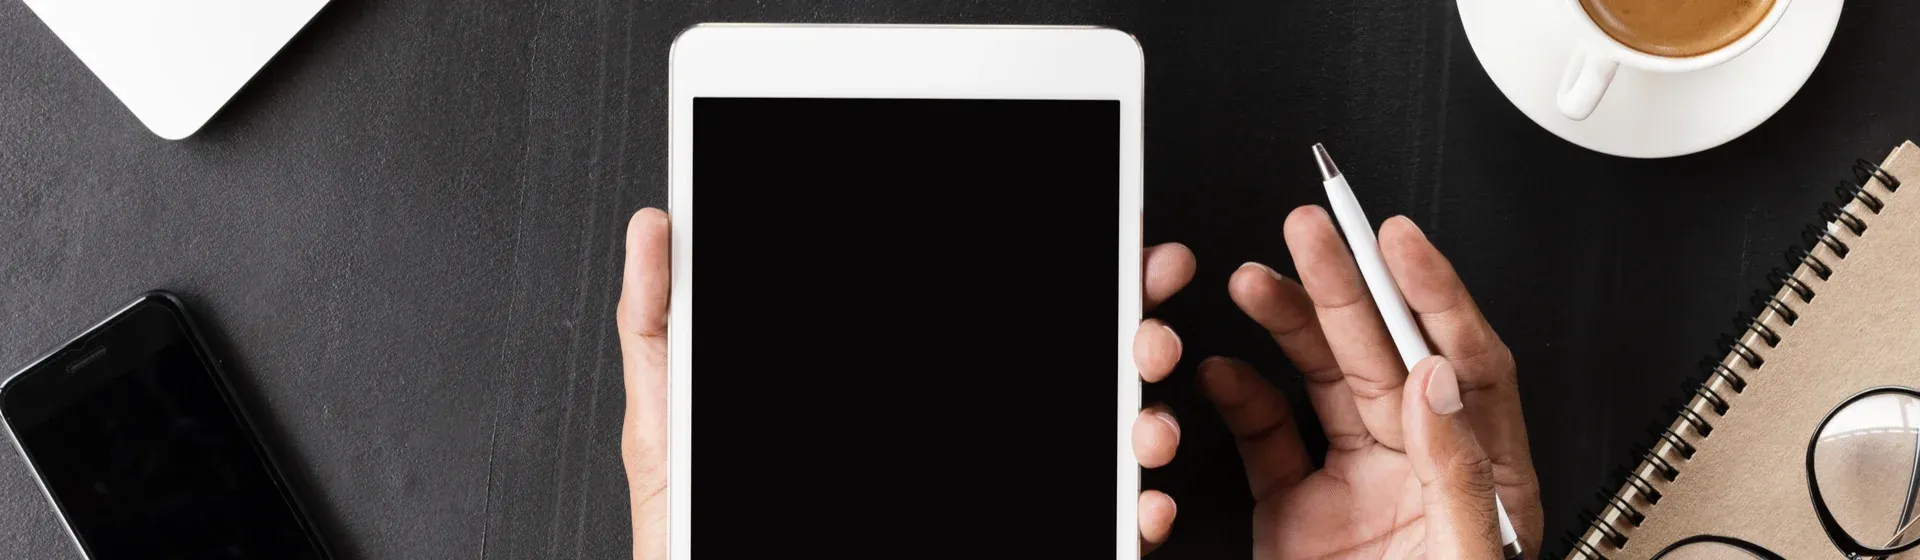 Detalhe de mão segurando iPad com tela preta, tendo a mesa de trabalho em volta